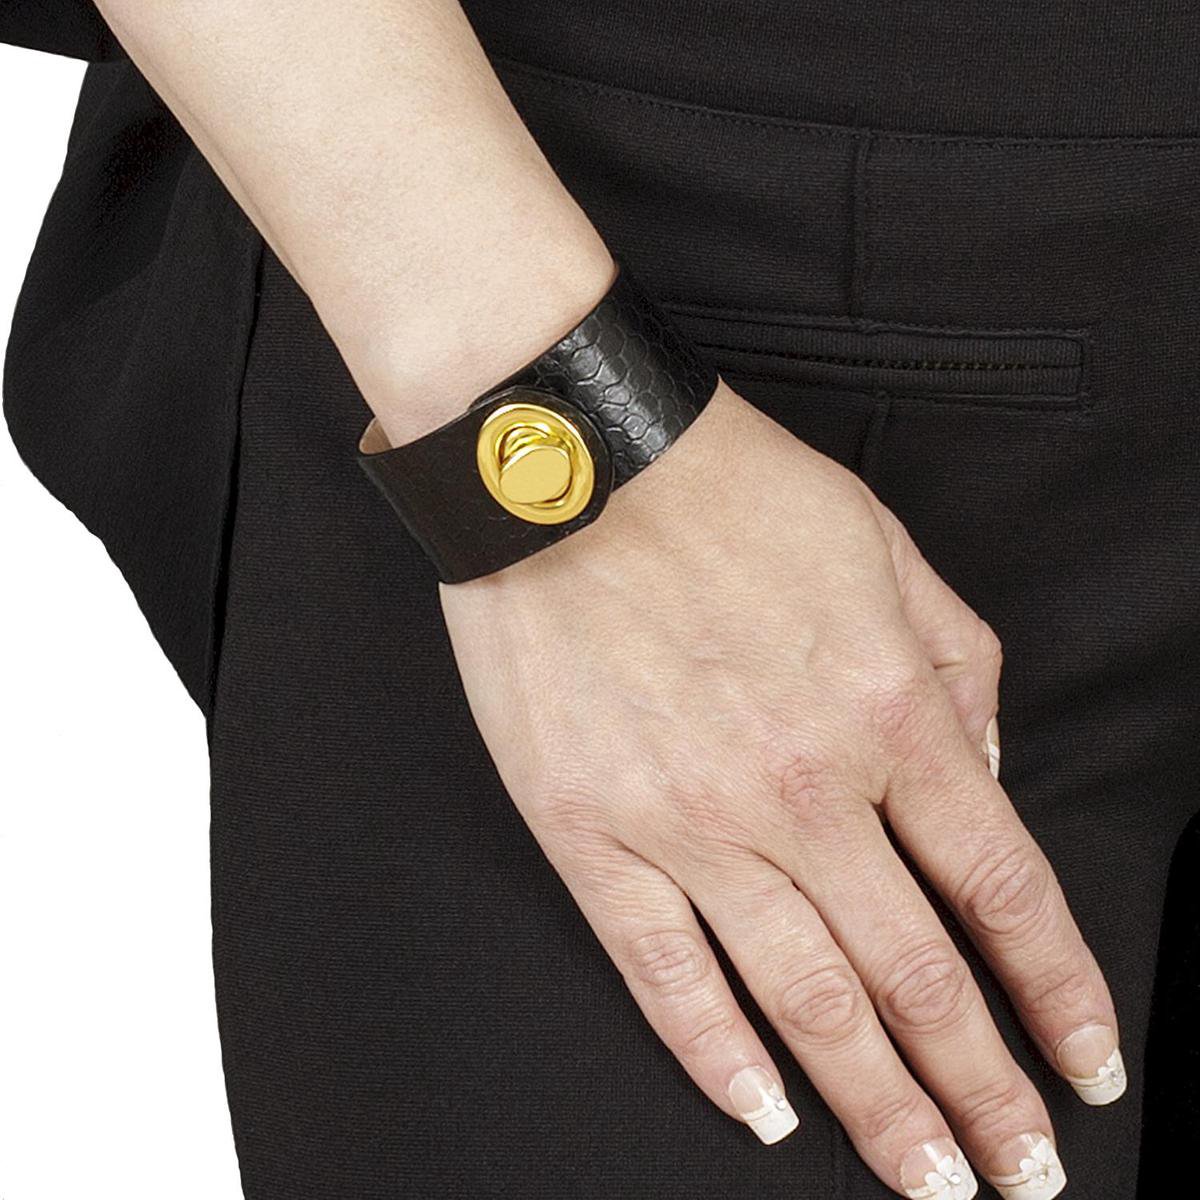 NEW SALE van 74,00 EUR afgeprijsd, BELUCIA Dames armband LK-01 Kalfsleer shiny zwart, goudkleurig, maat 17 cm